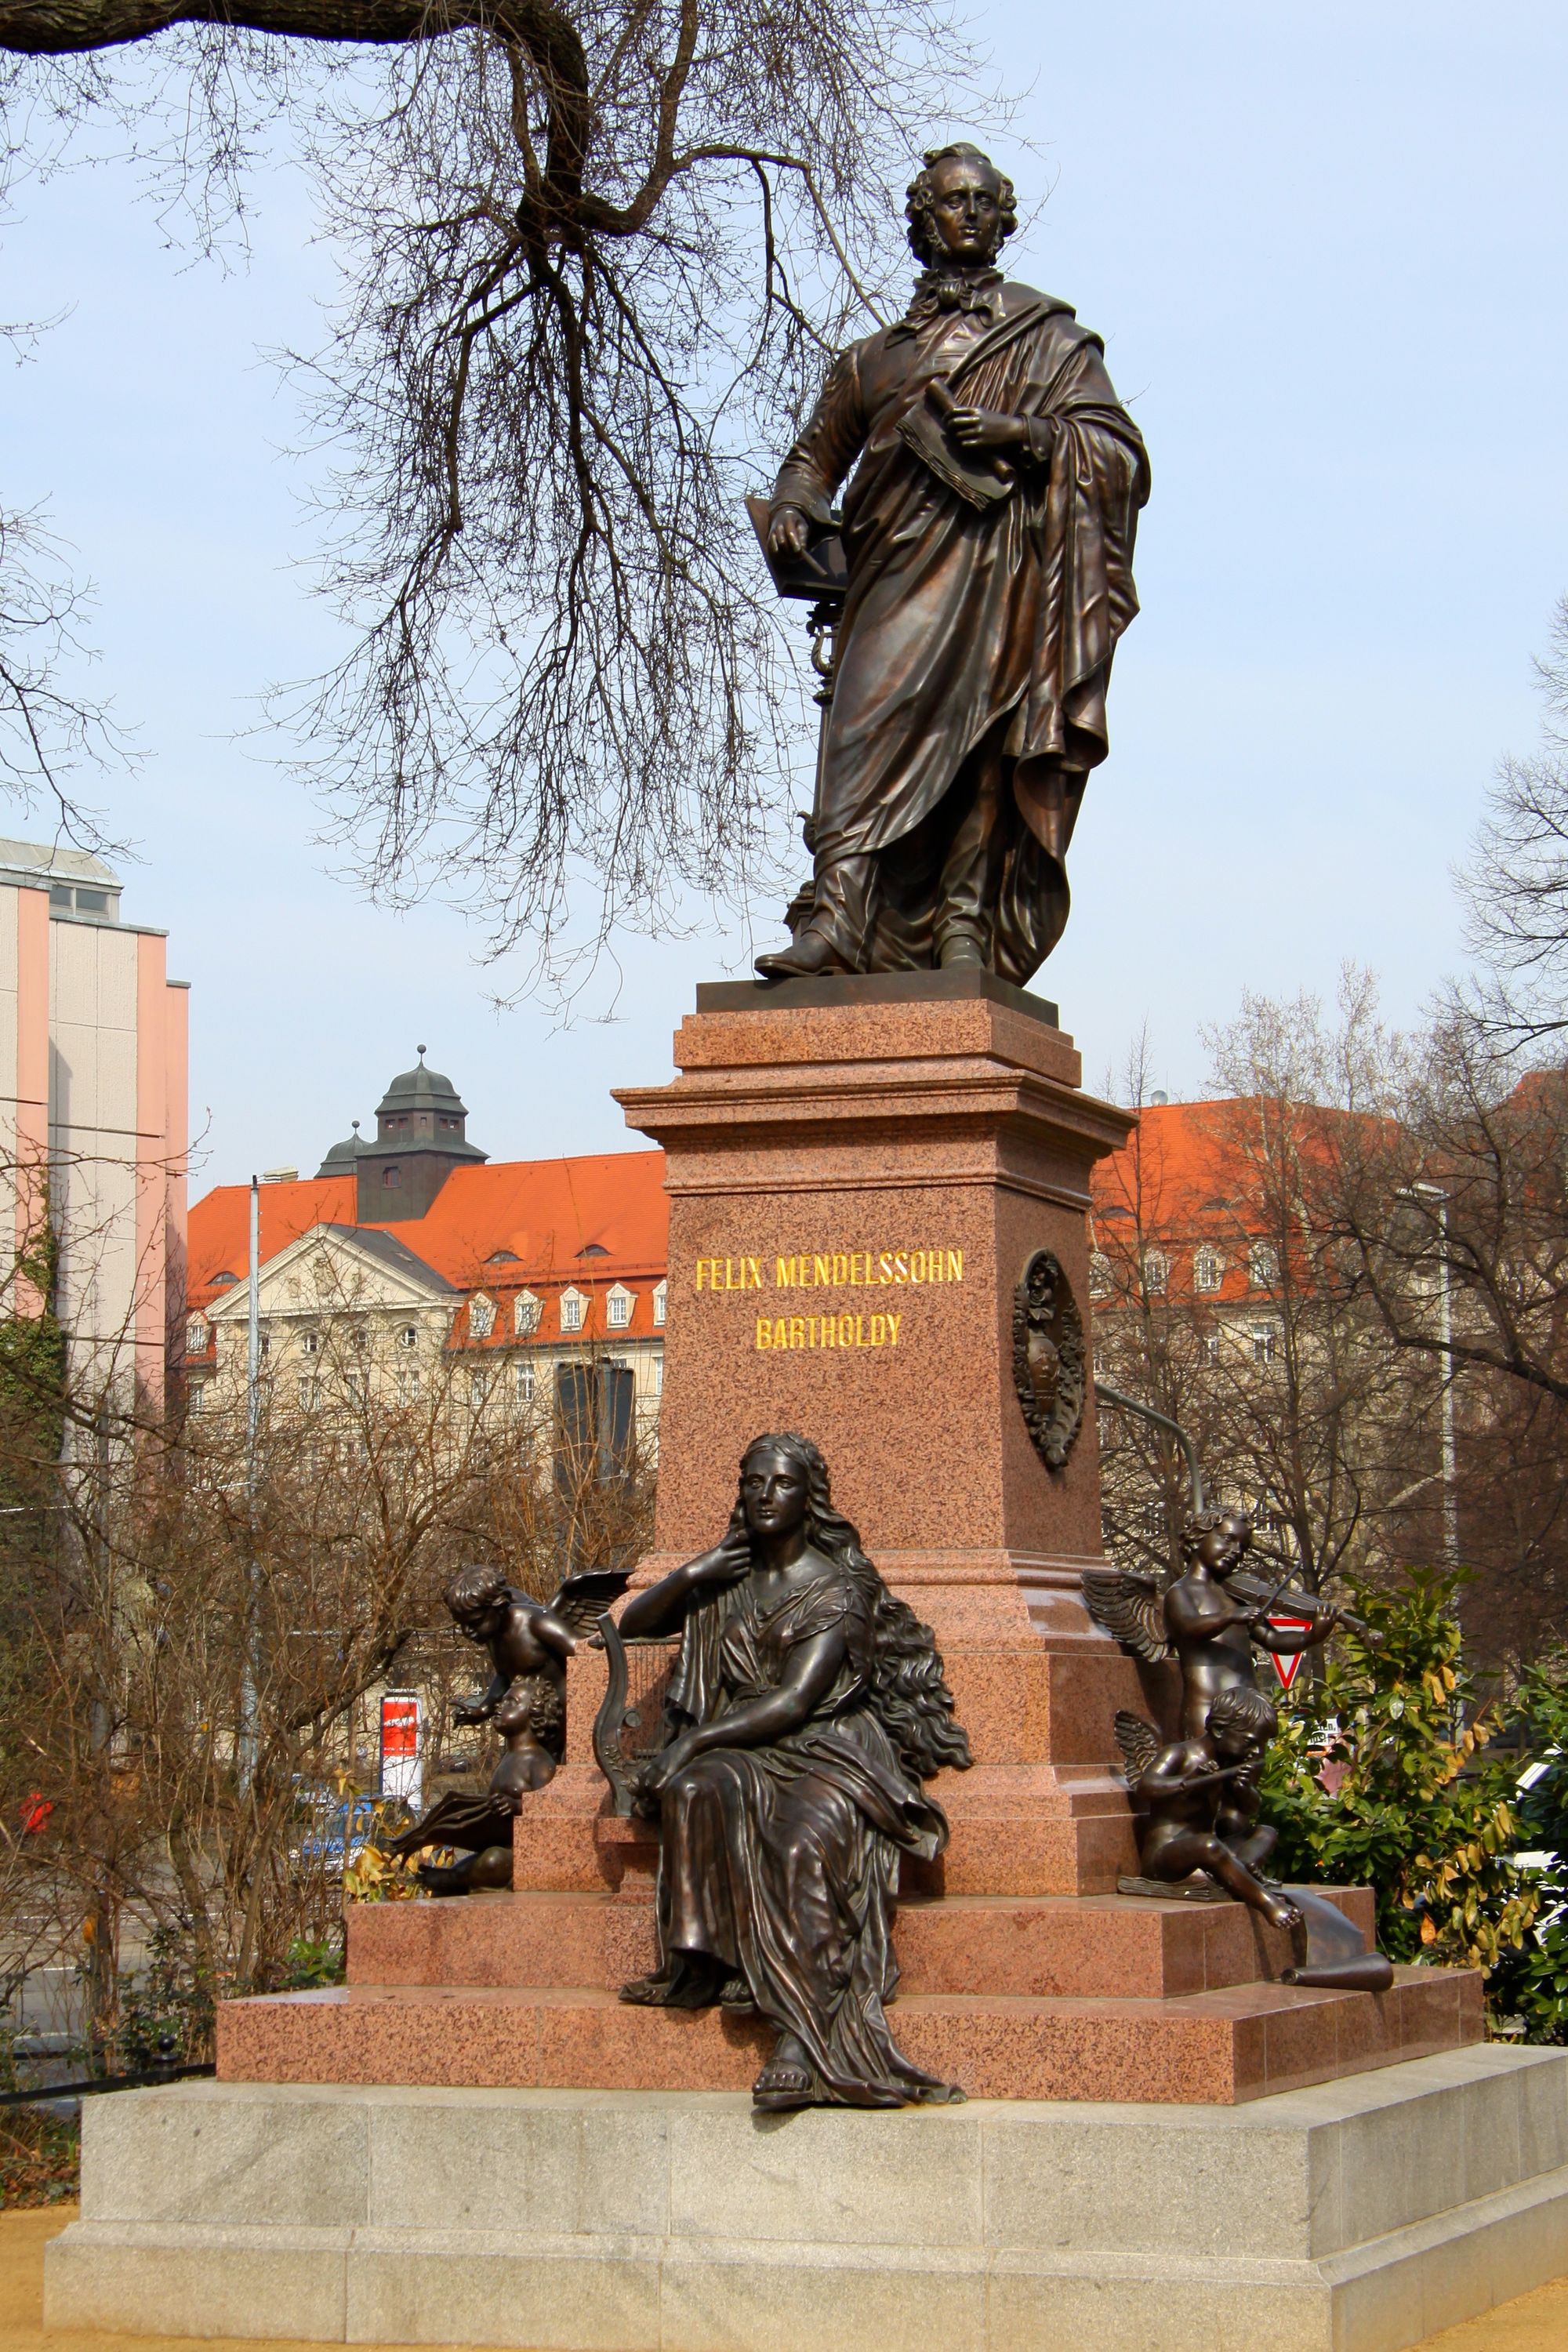 孟德爾遜為巴赫籌款，豎立銅像。而他在萊比錫的工作，也令他成為萊比錫的標誌。他的銅像，現聳立在聖多馬大教堂附近。